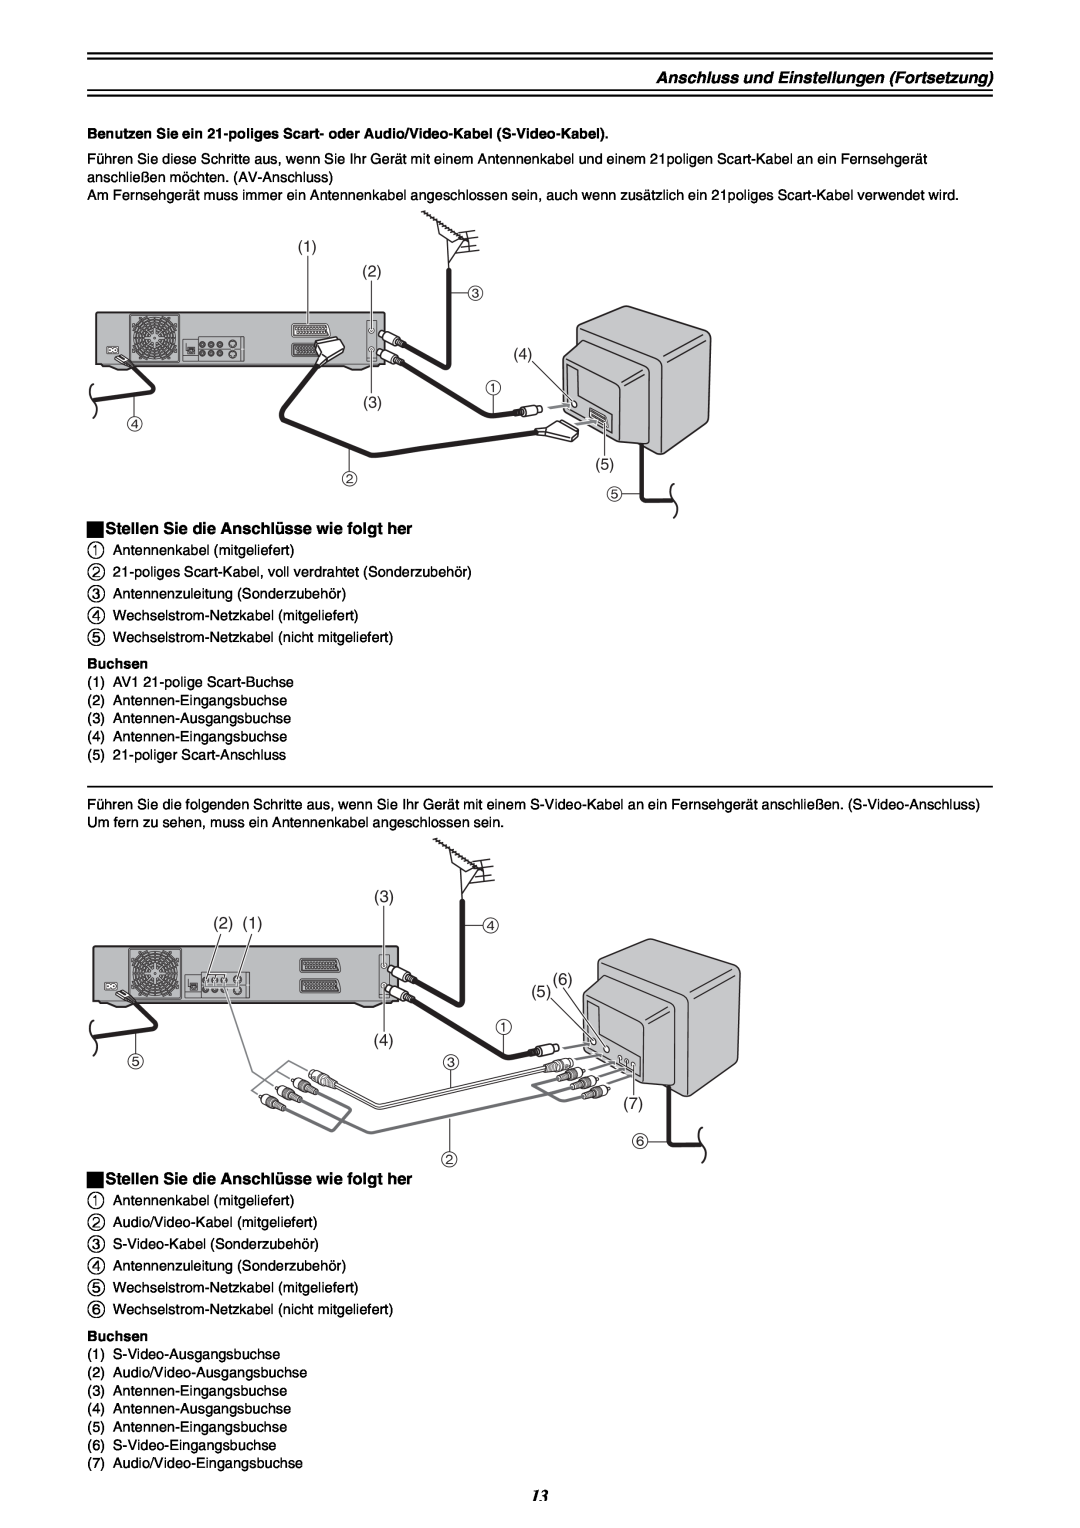 Panasonic DMR-E30 manual Anschluss und Einstellungen Fortsetzung, ªStellen Sie die Anschlüsse wie folgt her, Buchsen 